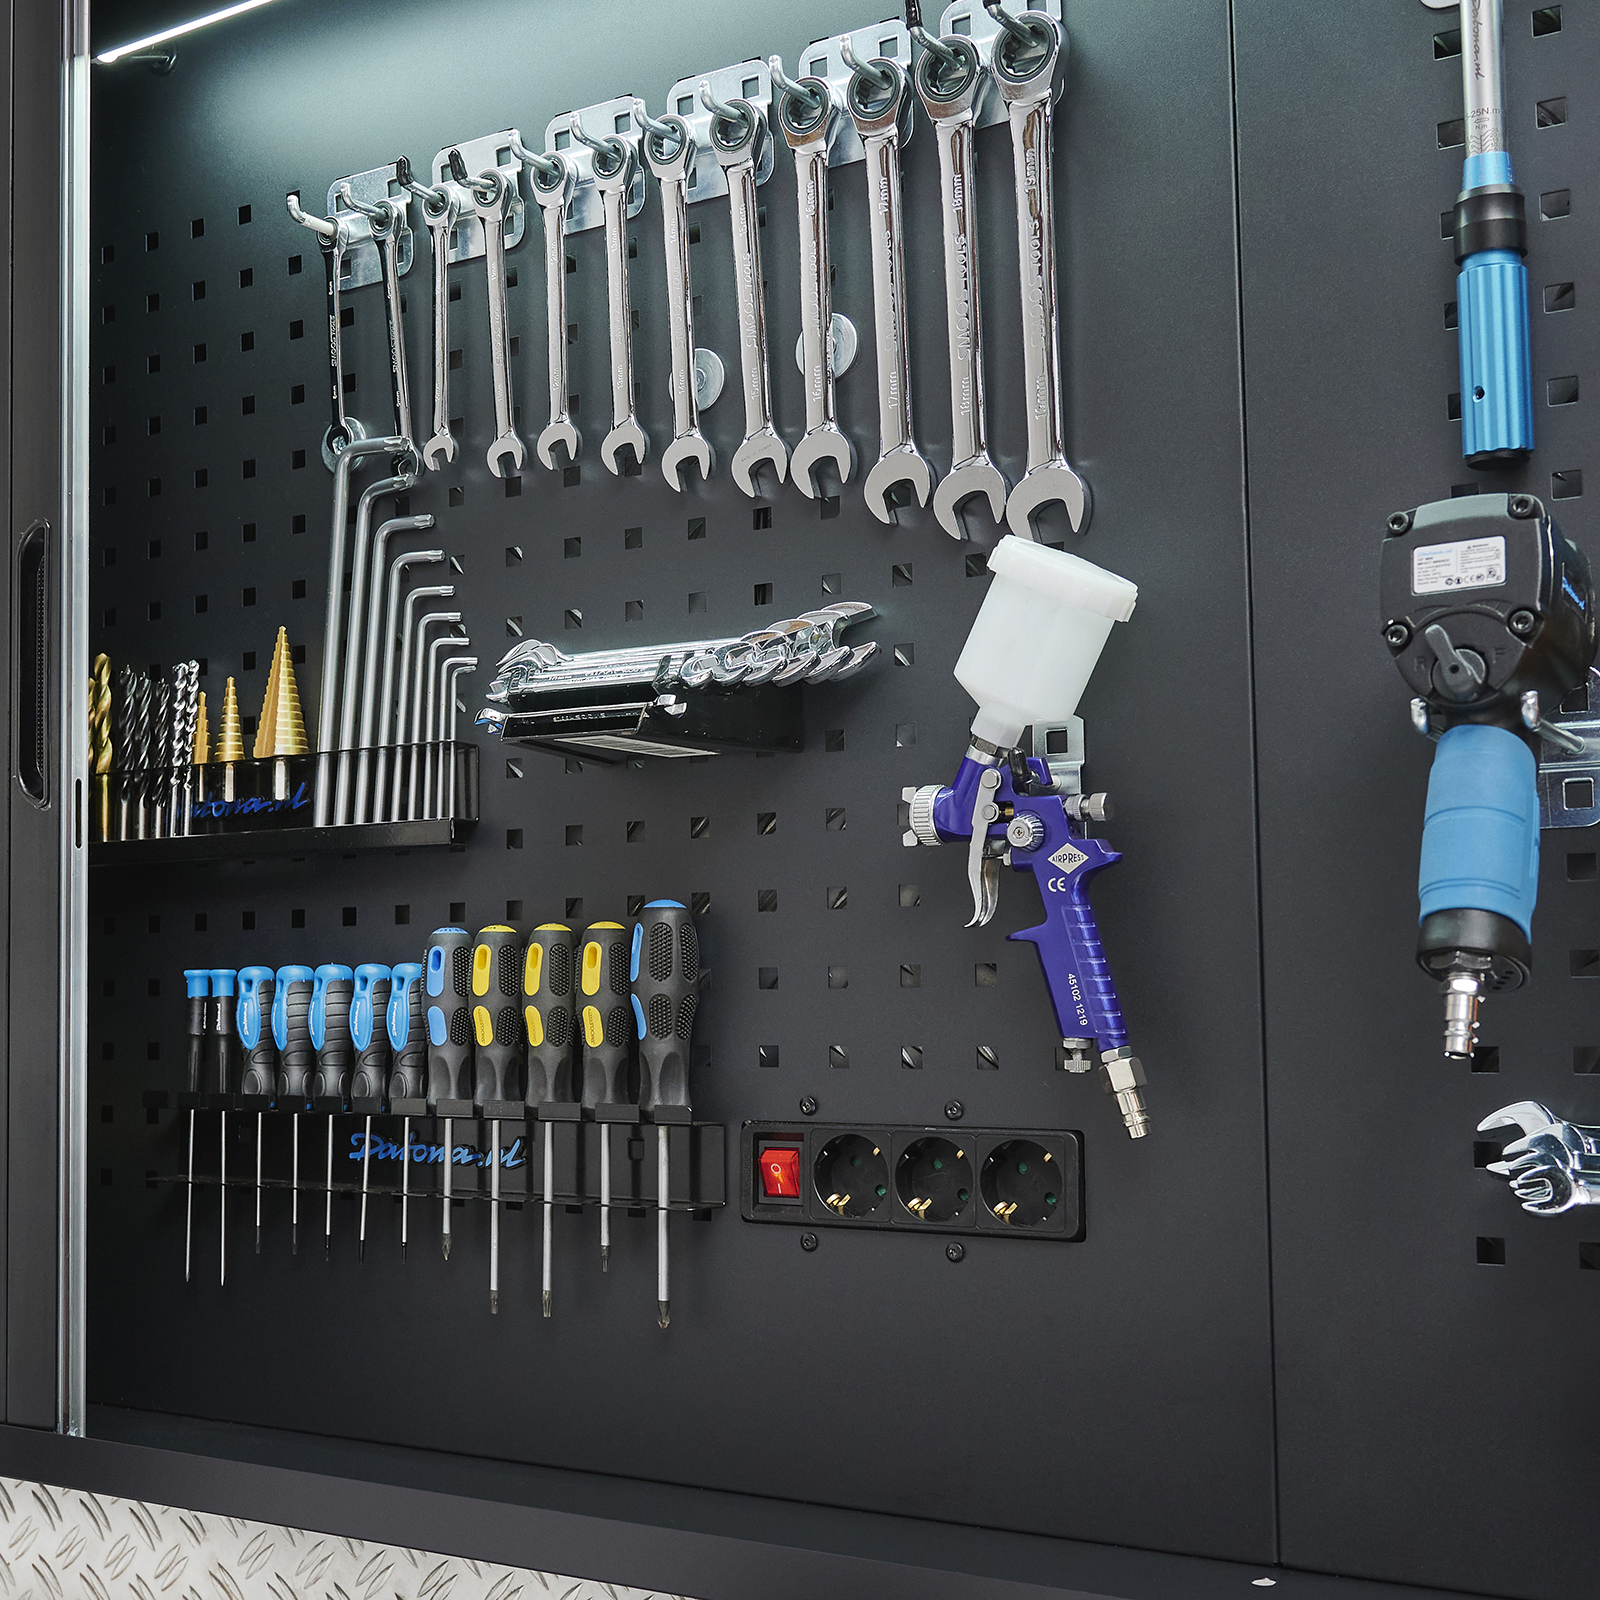 Étagère murale pour organisation d'outils de garage - Mon étagère murale